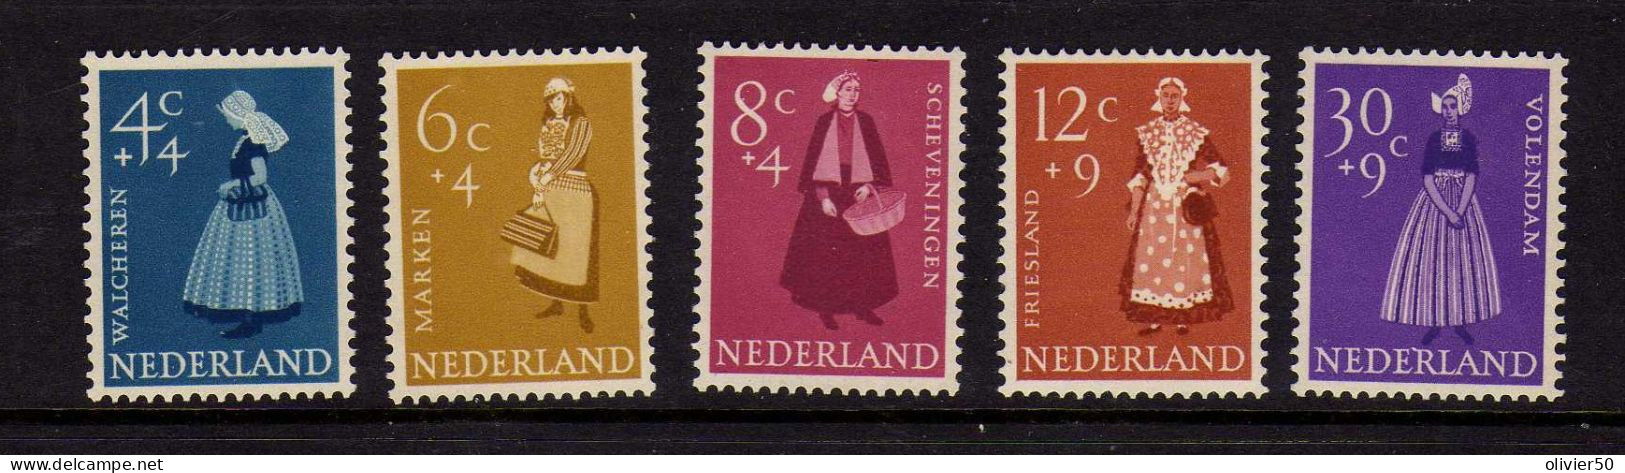 Pays-Bas - 1958 - Costumes - Oeuvres De Bienfaisance - Neufs** - MNH - Neufs